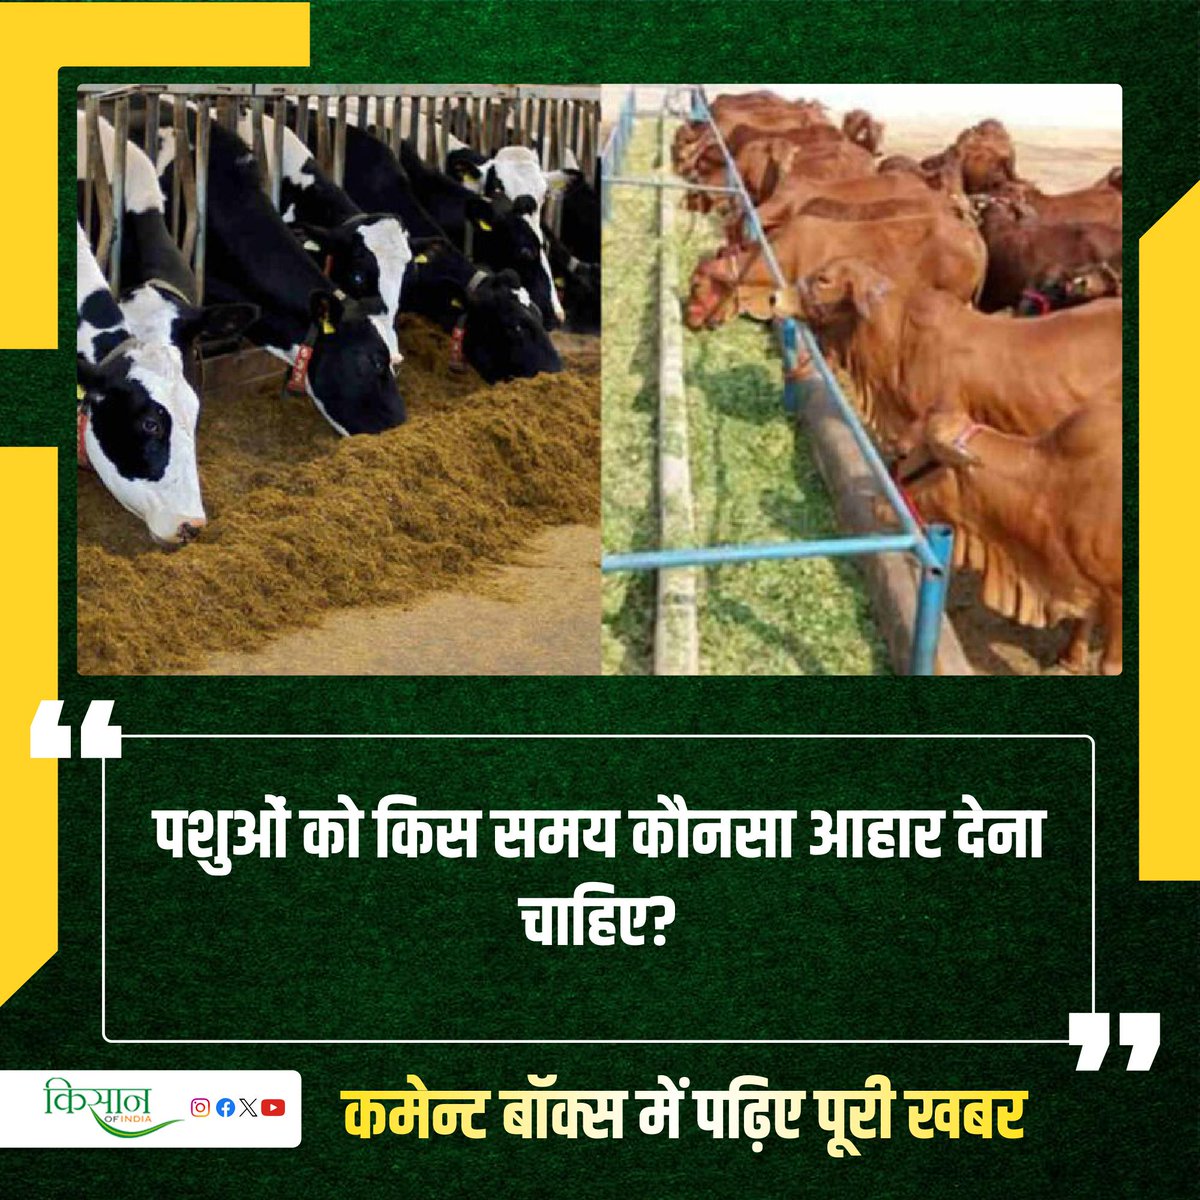 जानिए पशुओं के लिए सस्ता, सुलभ और पौष्टिक पशु आहार क्या हो सकता है?

#KisanOfIndia #Agriculture #Agri #Viral #AnimalHusbandry #AnimalFeed